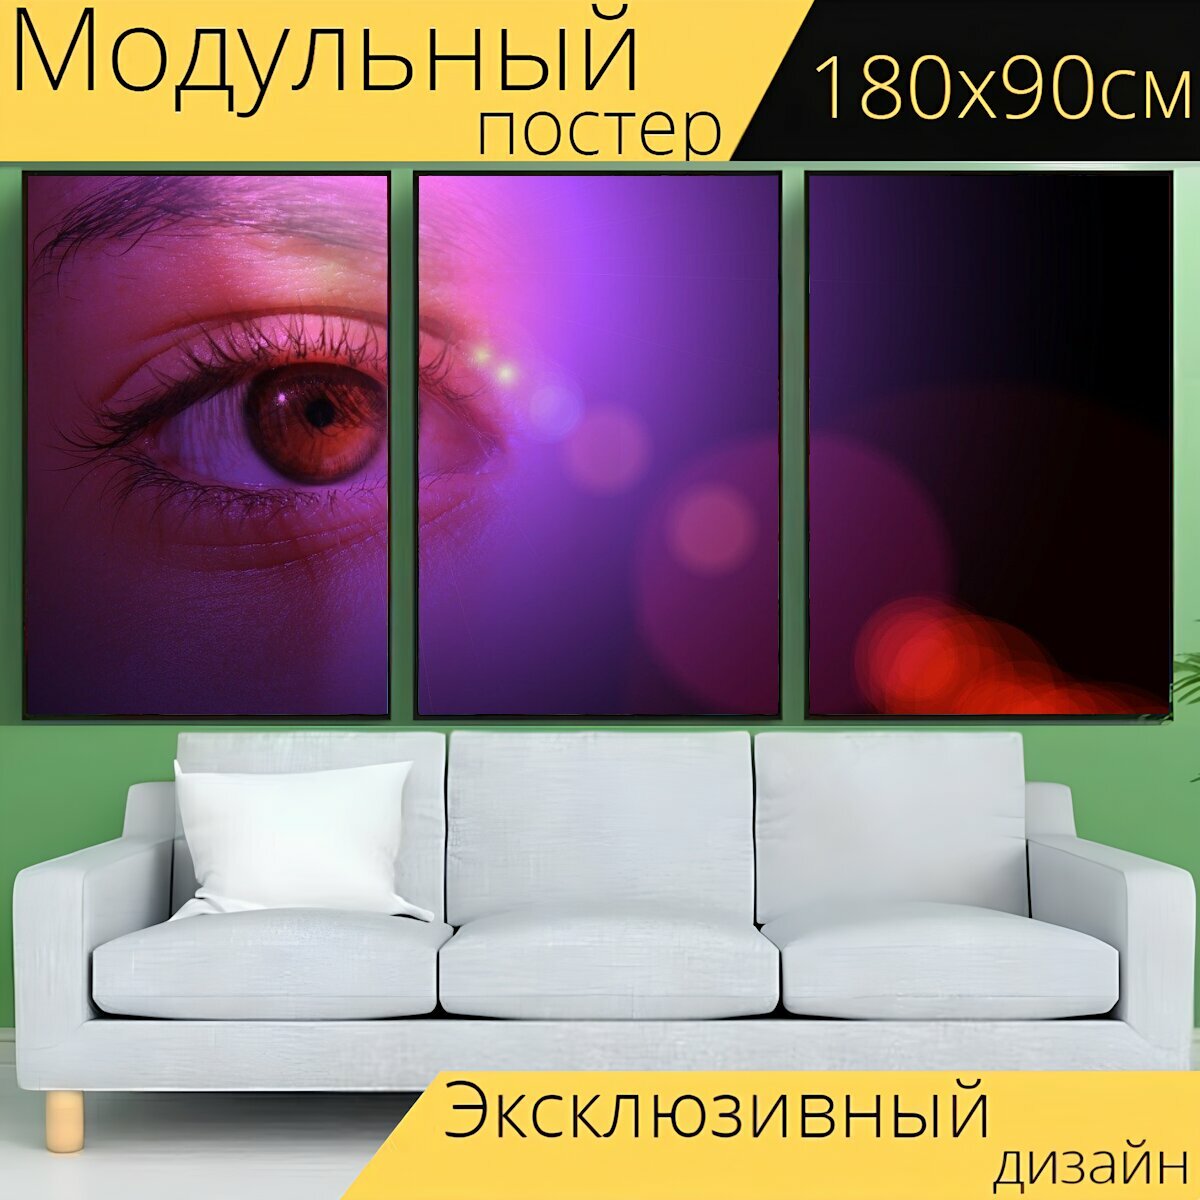 Модульный постер "Лицо, глаз, чернить" 180 x 90 см. для интерьера